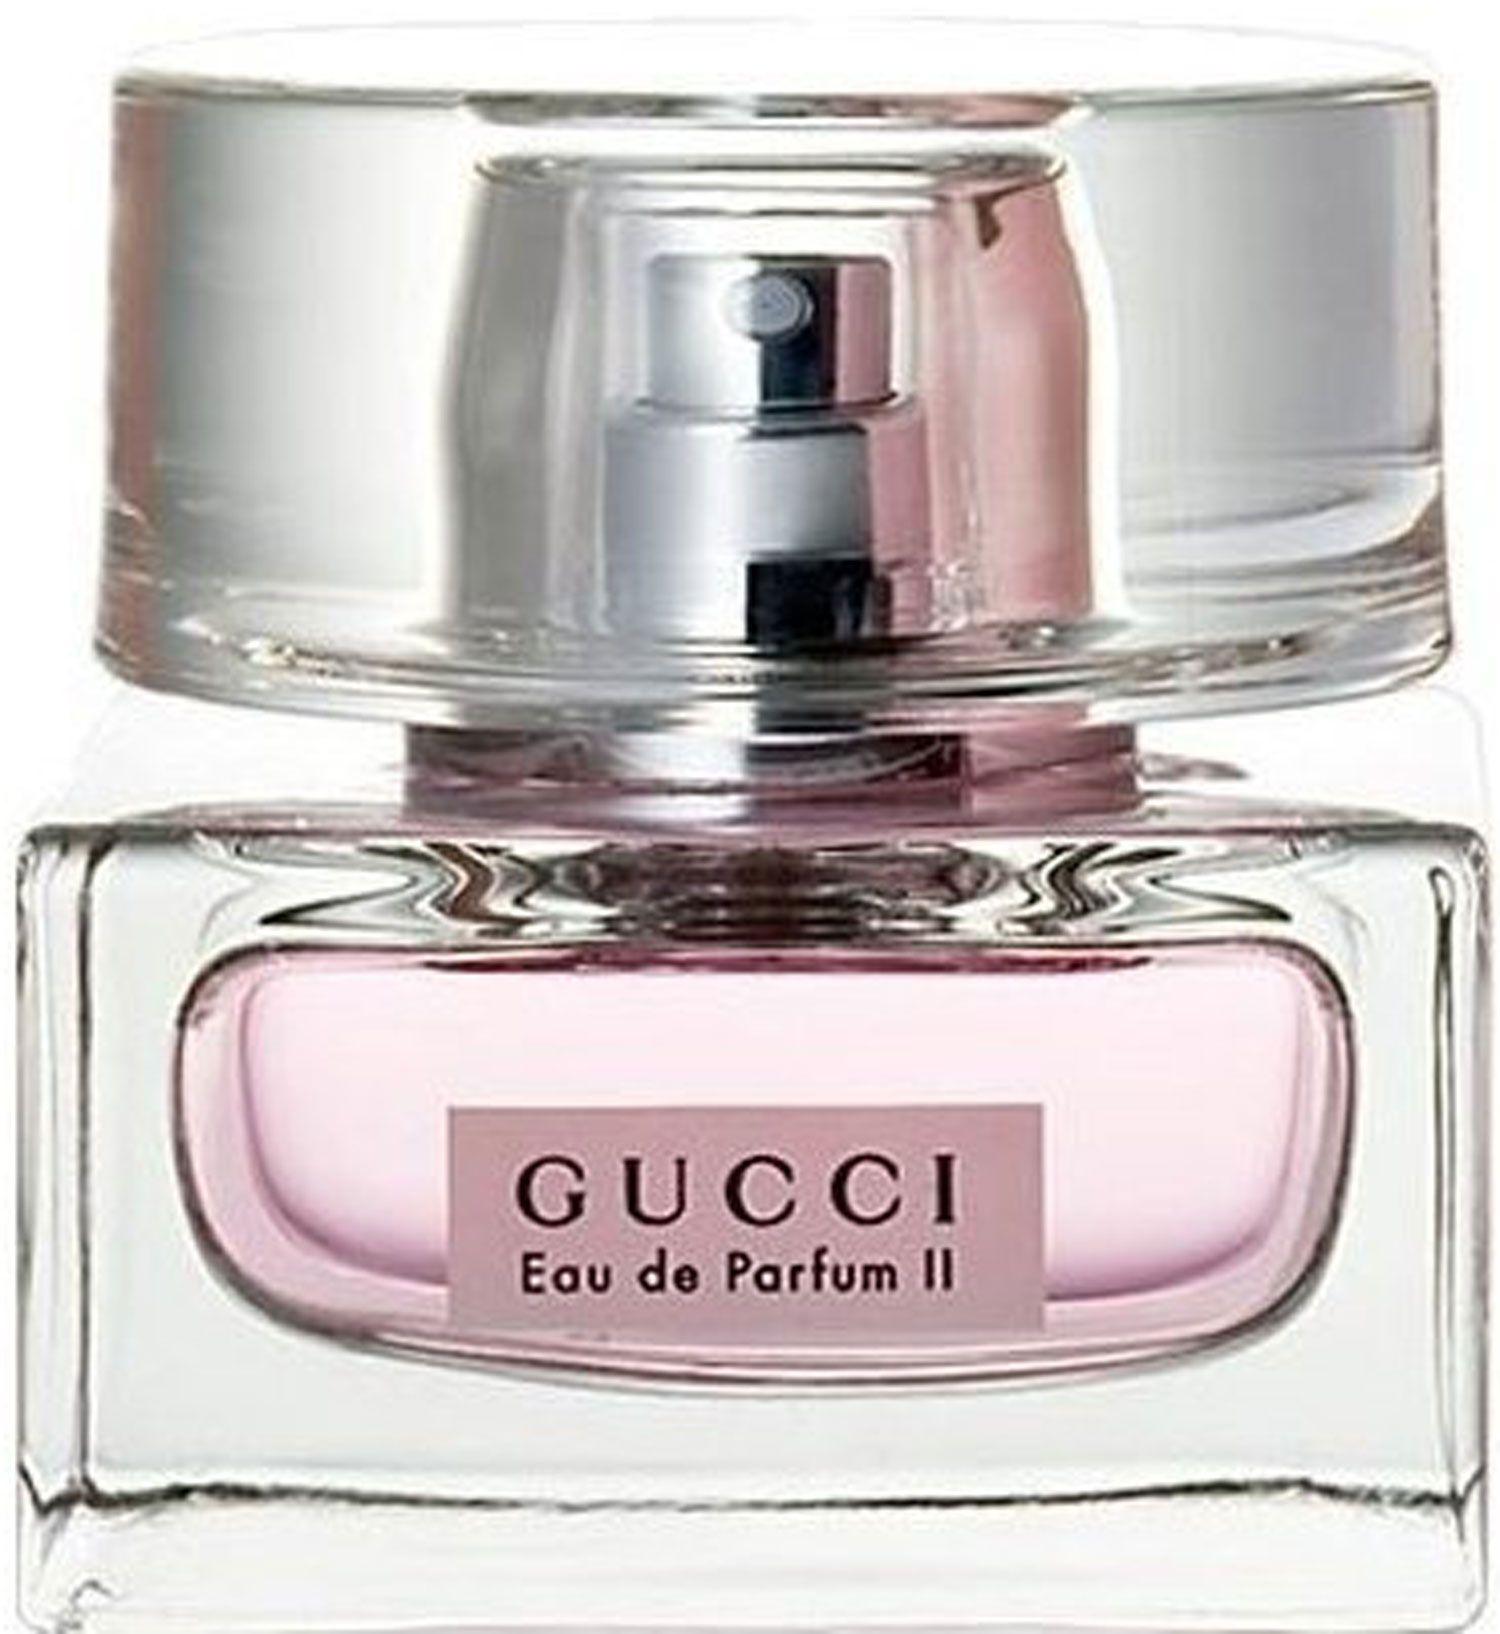 Gucci Eau de Parfum II - Parfum Gallerie